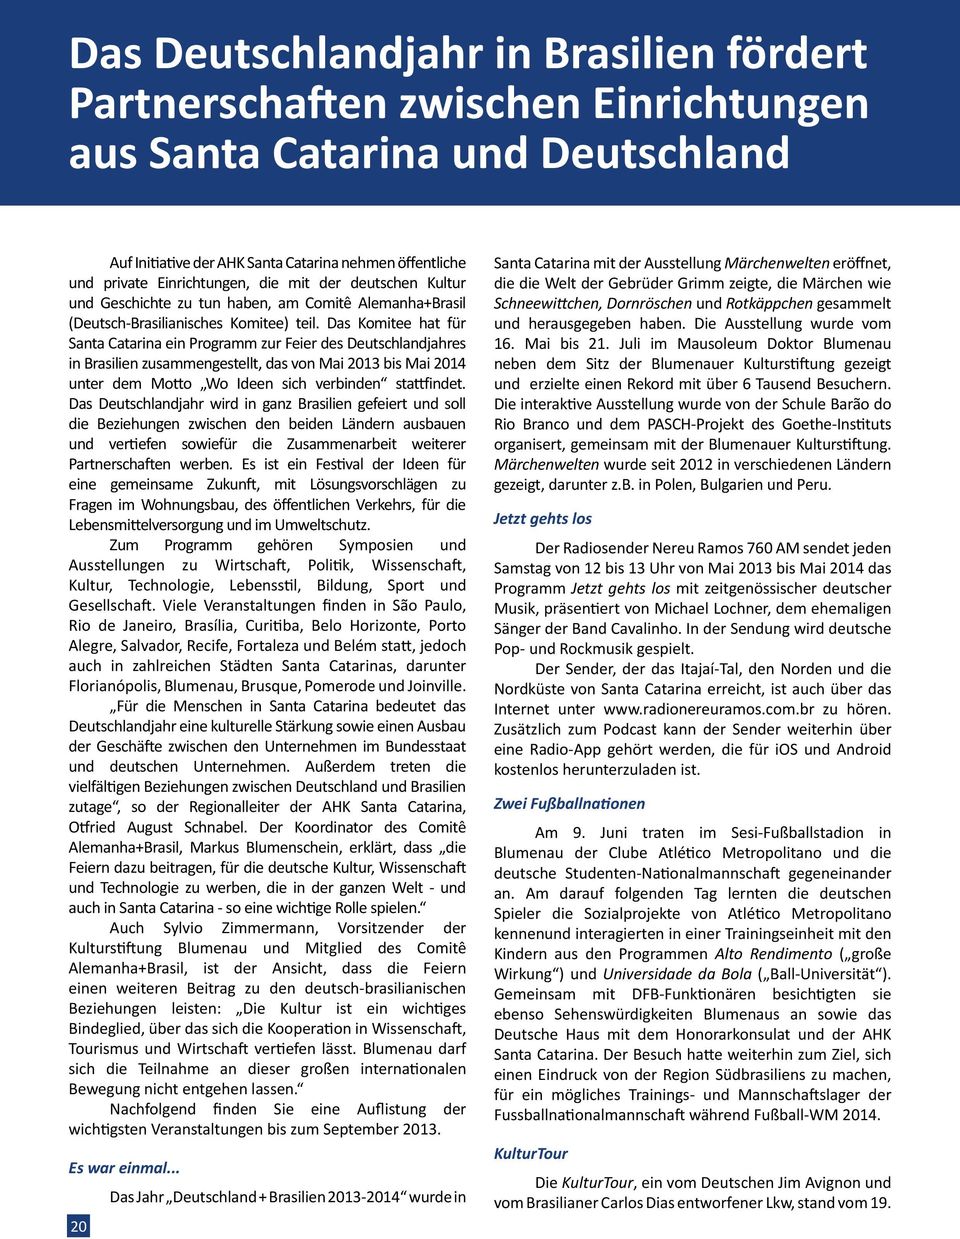 Das Komitee hat für Santa Catarina ein Programm zur Feier des Deutschlandjahres in Brasilien zusammengestellt, das von Mai 2013 bis Mai 2014 unter dem Motto Wo Ideen sich verbinden stattfindet.